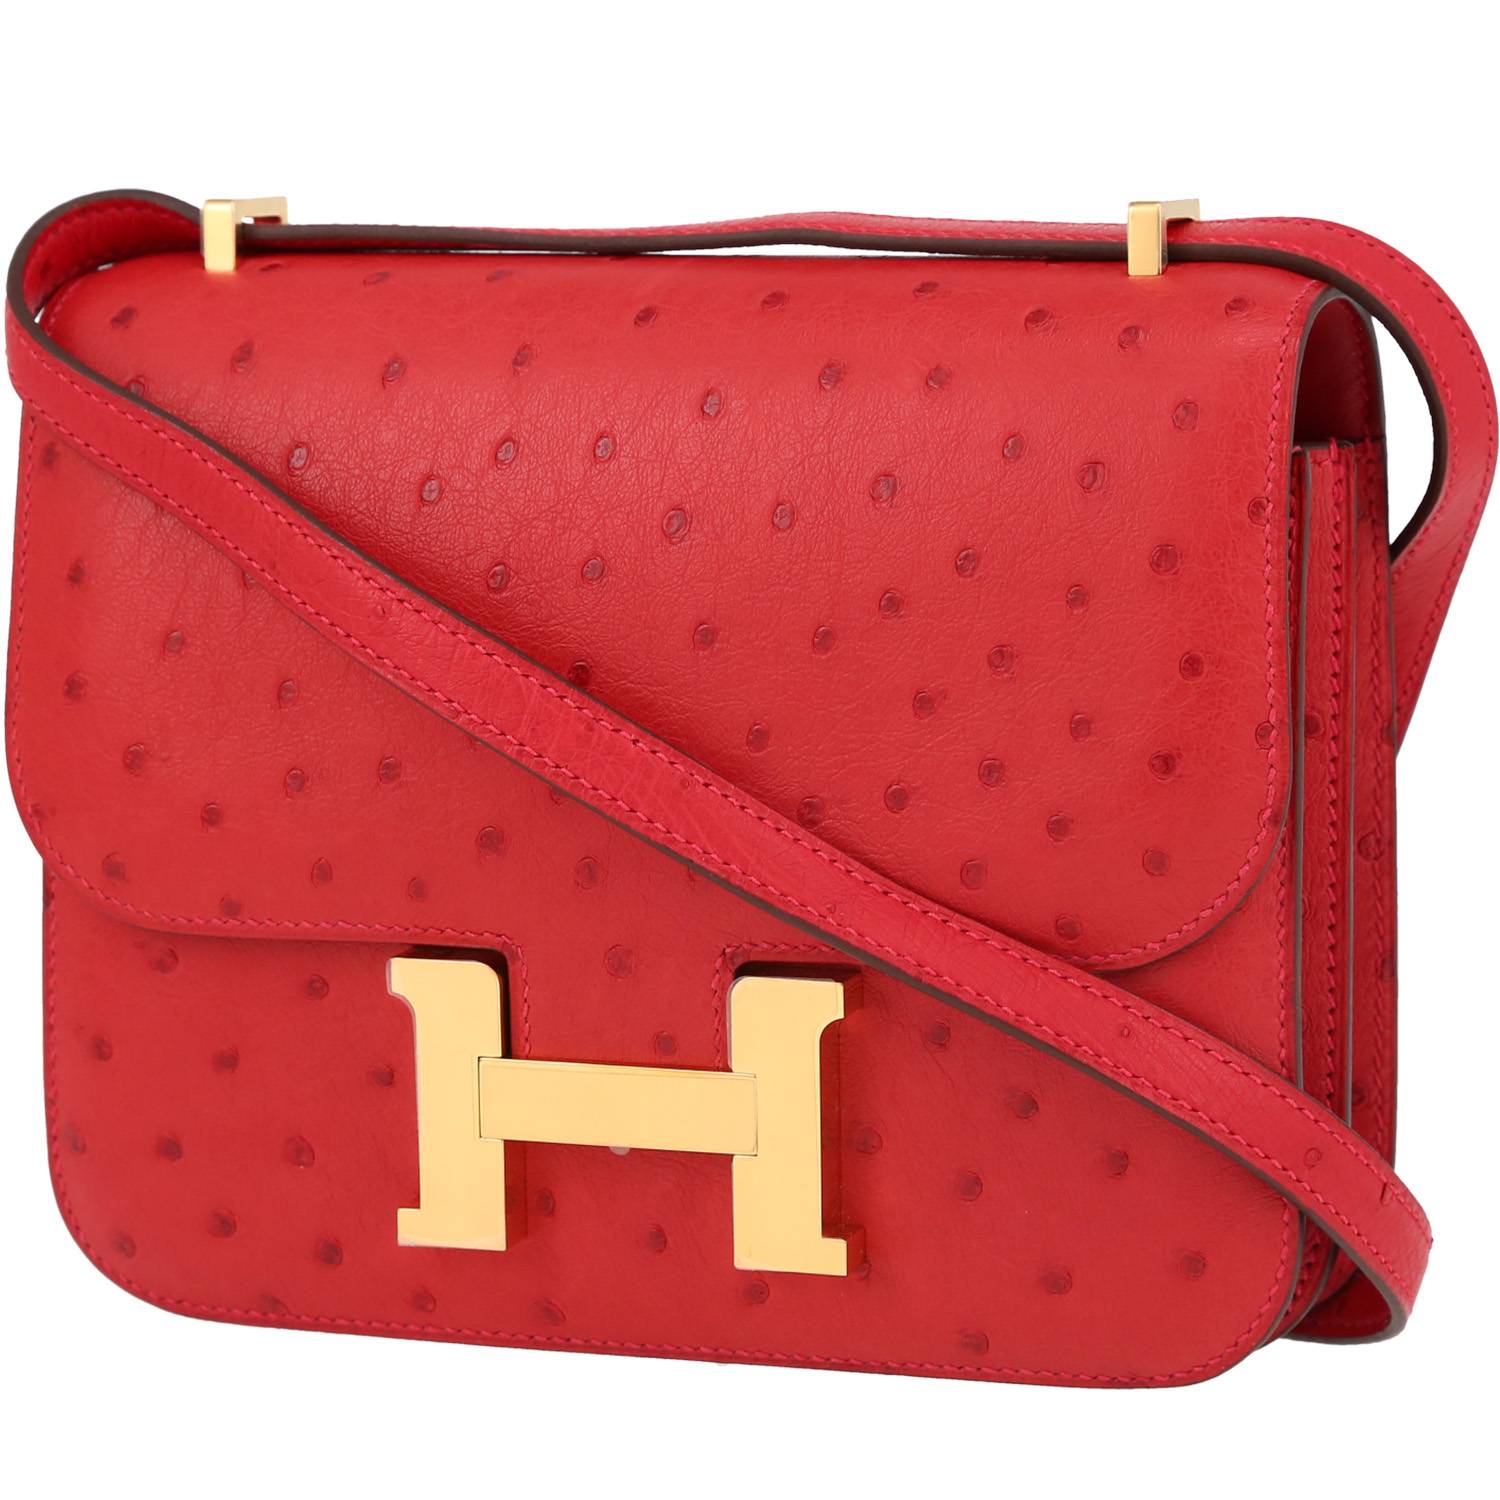 Hermes Hermès Constance Red Leather Shoulder Bag ()